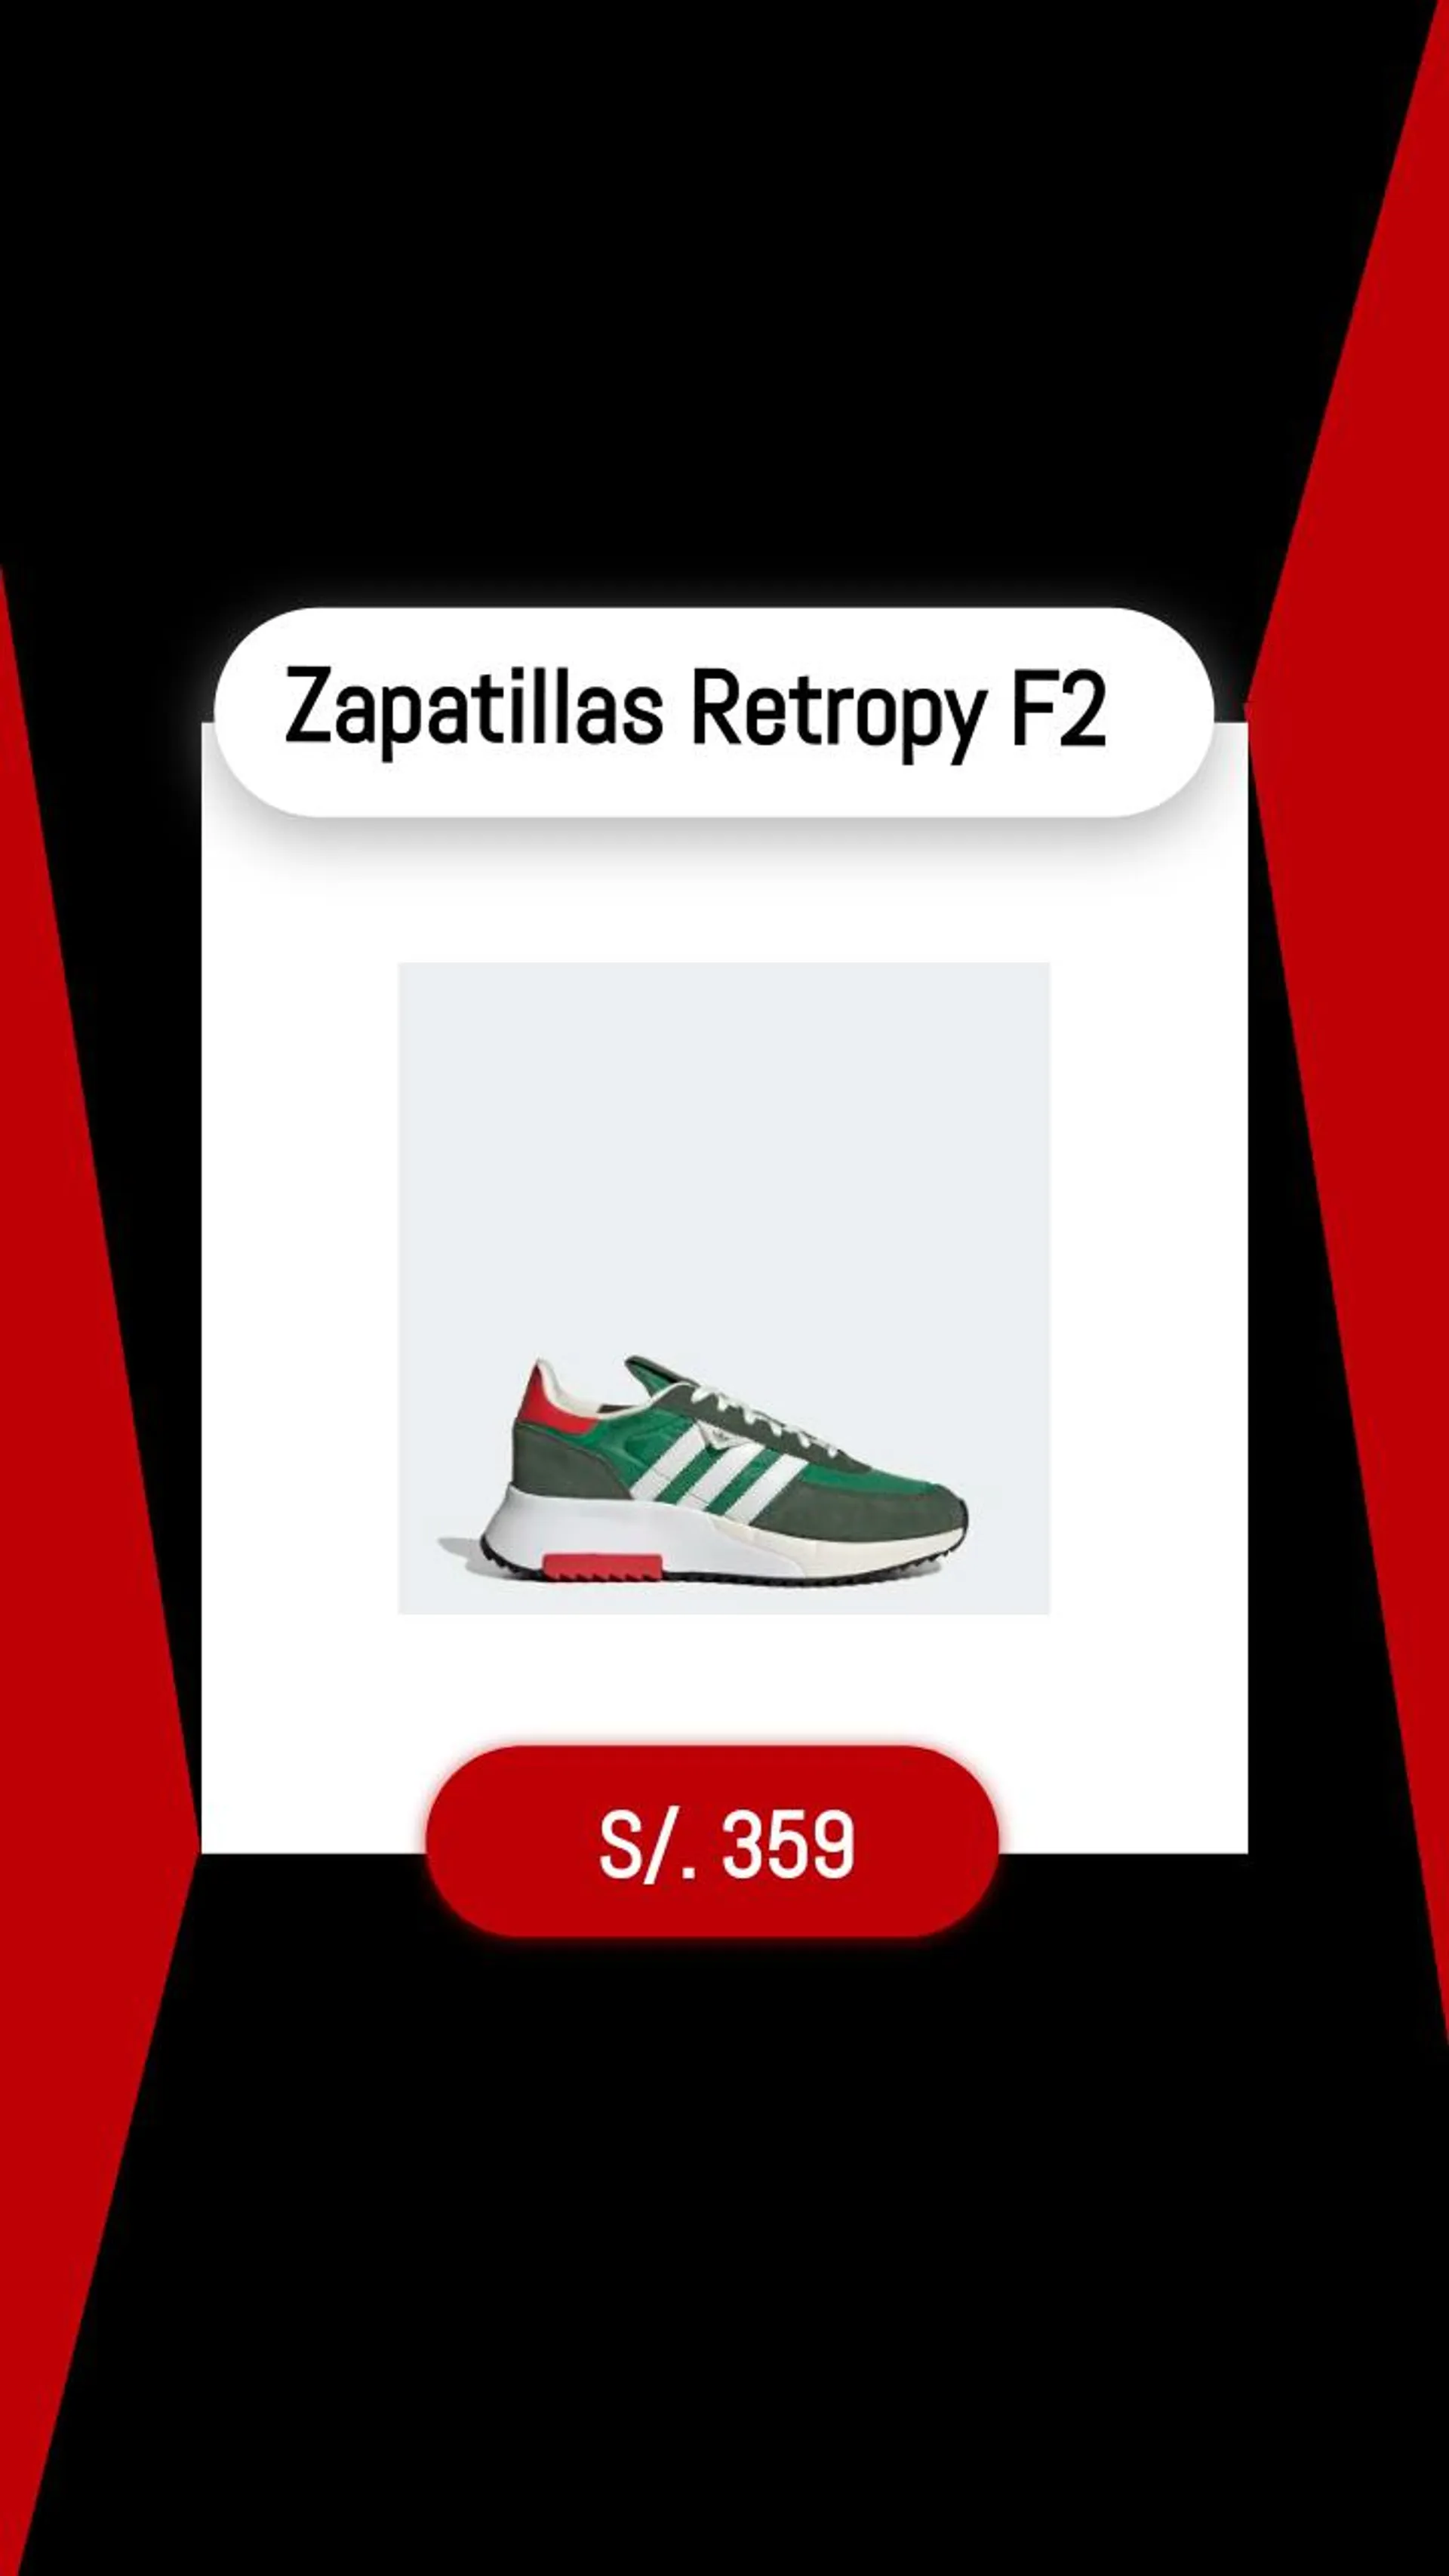 Zapatillas Retropy F2